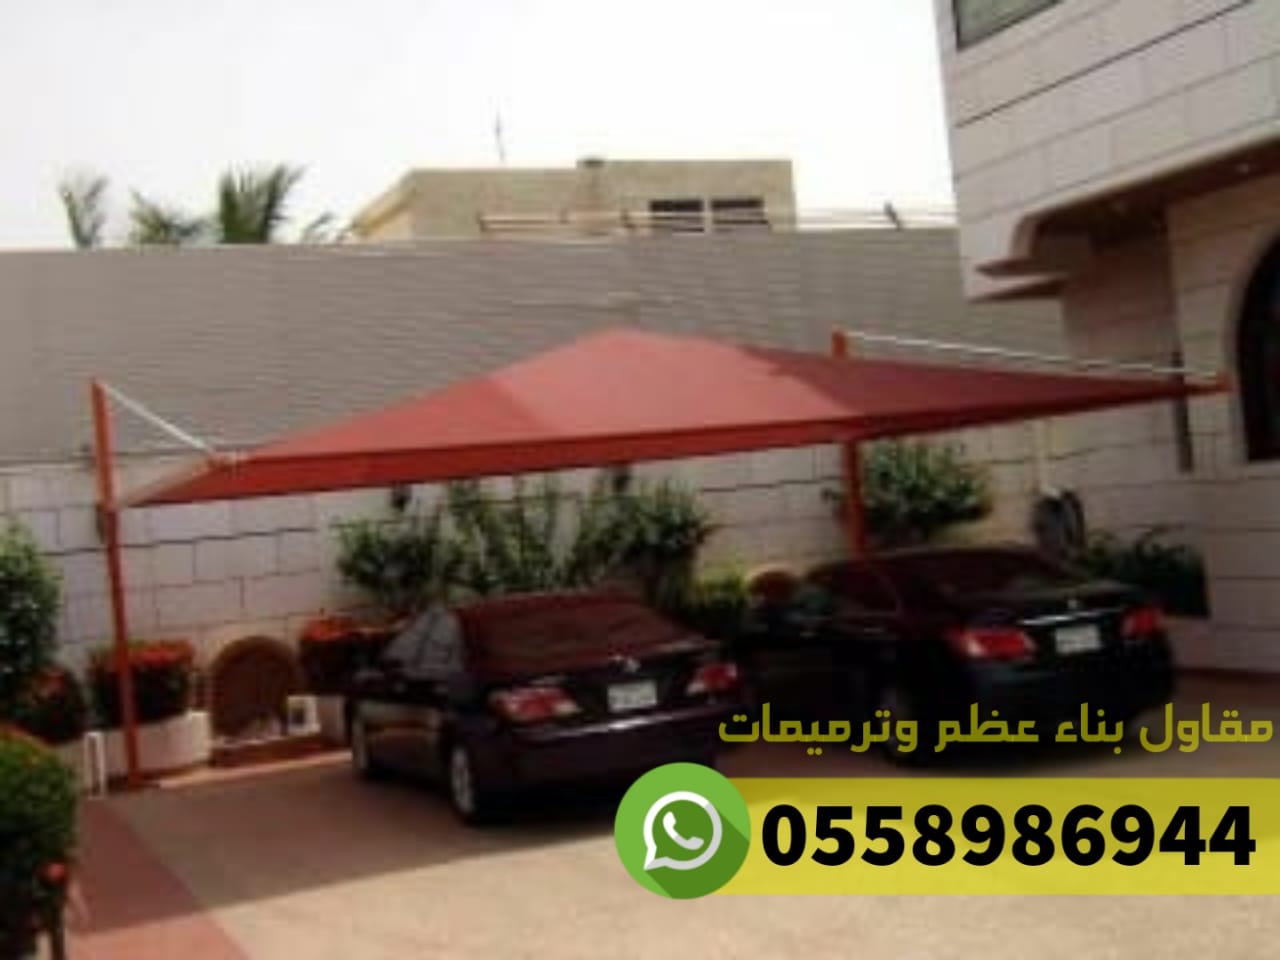 افضل - افضل مظلات للسيارات في جدة مكة الطائف, 0558986944 P_2536ngge82